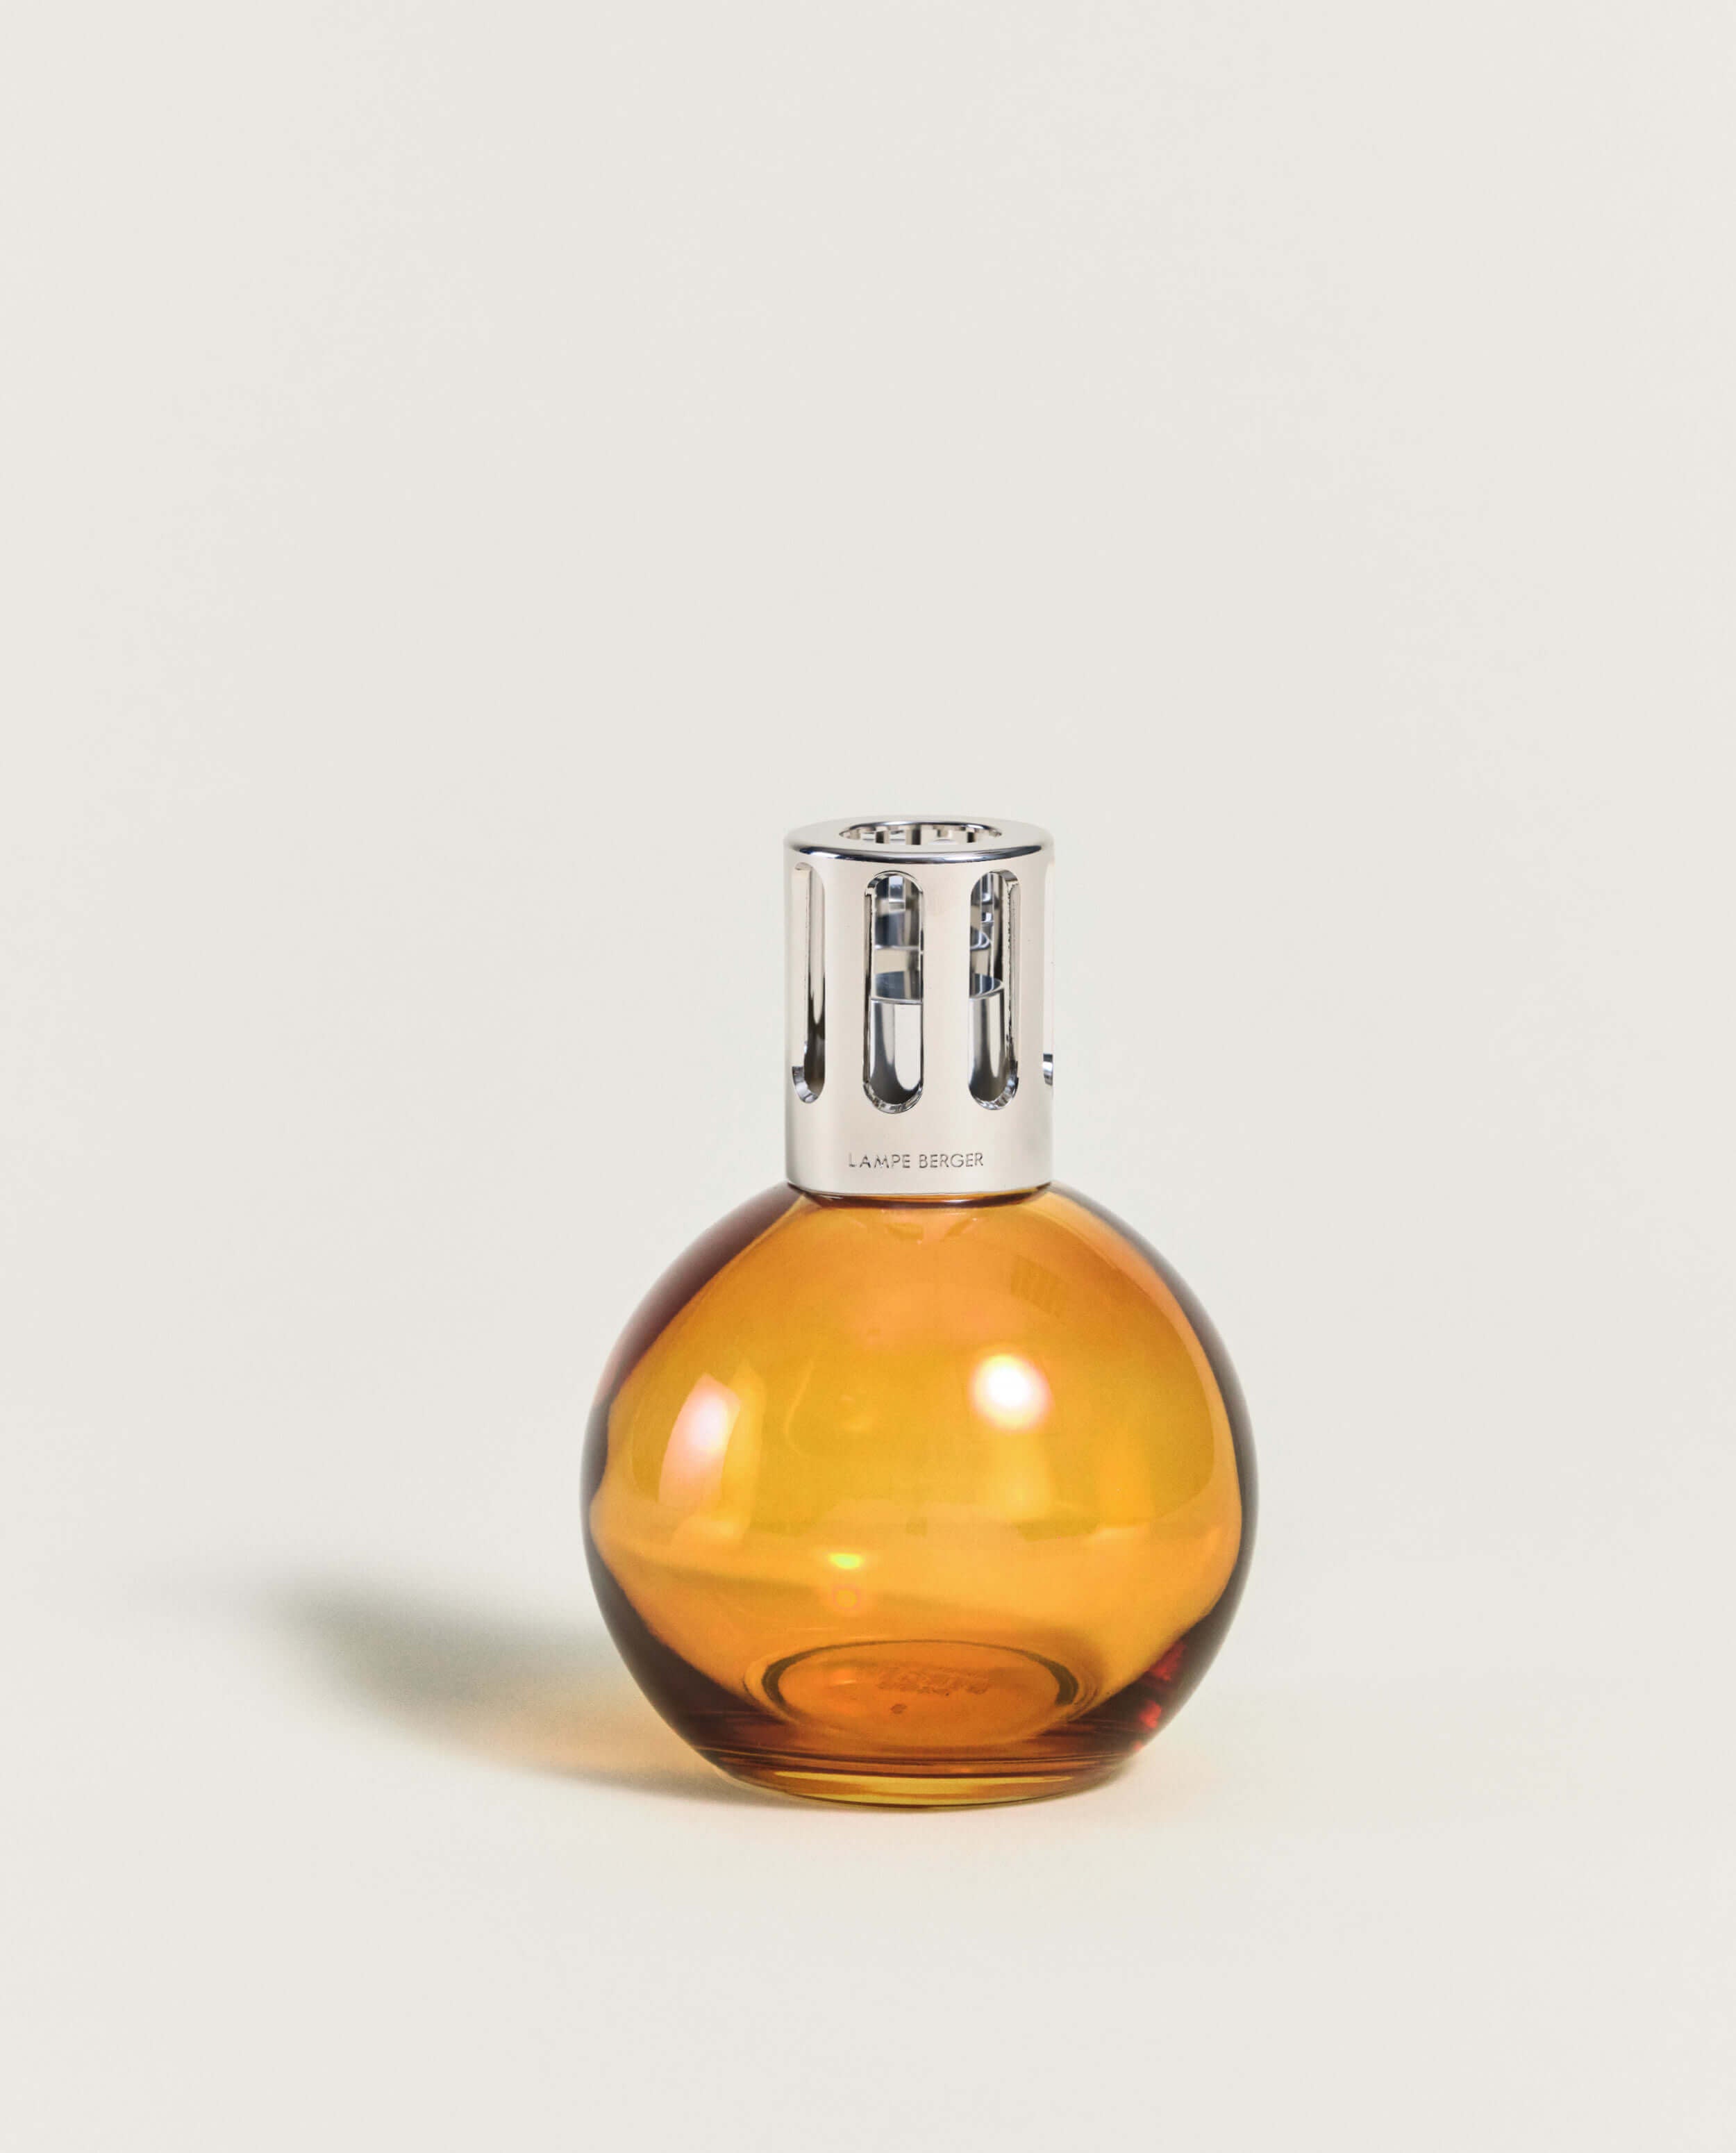 Hazelnut - Lampe Maison Berger Fragrance - 1 Litre – Lampe Store Authorized Maison  Berger Dealer